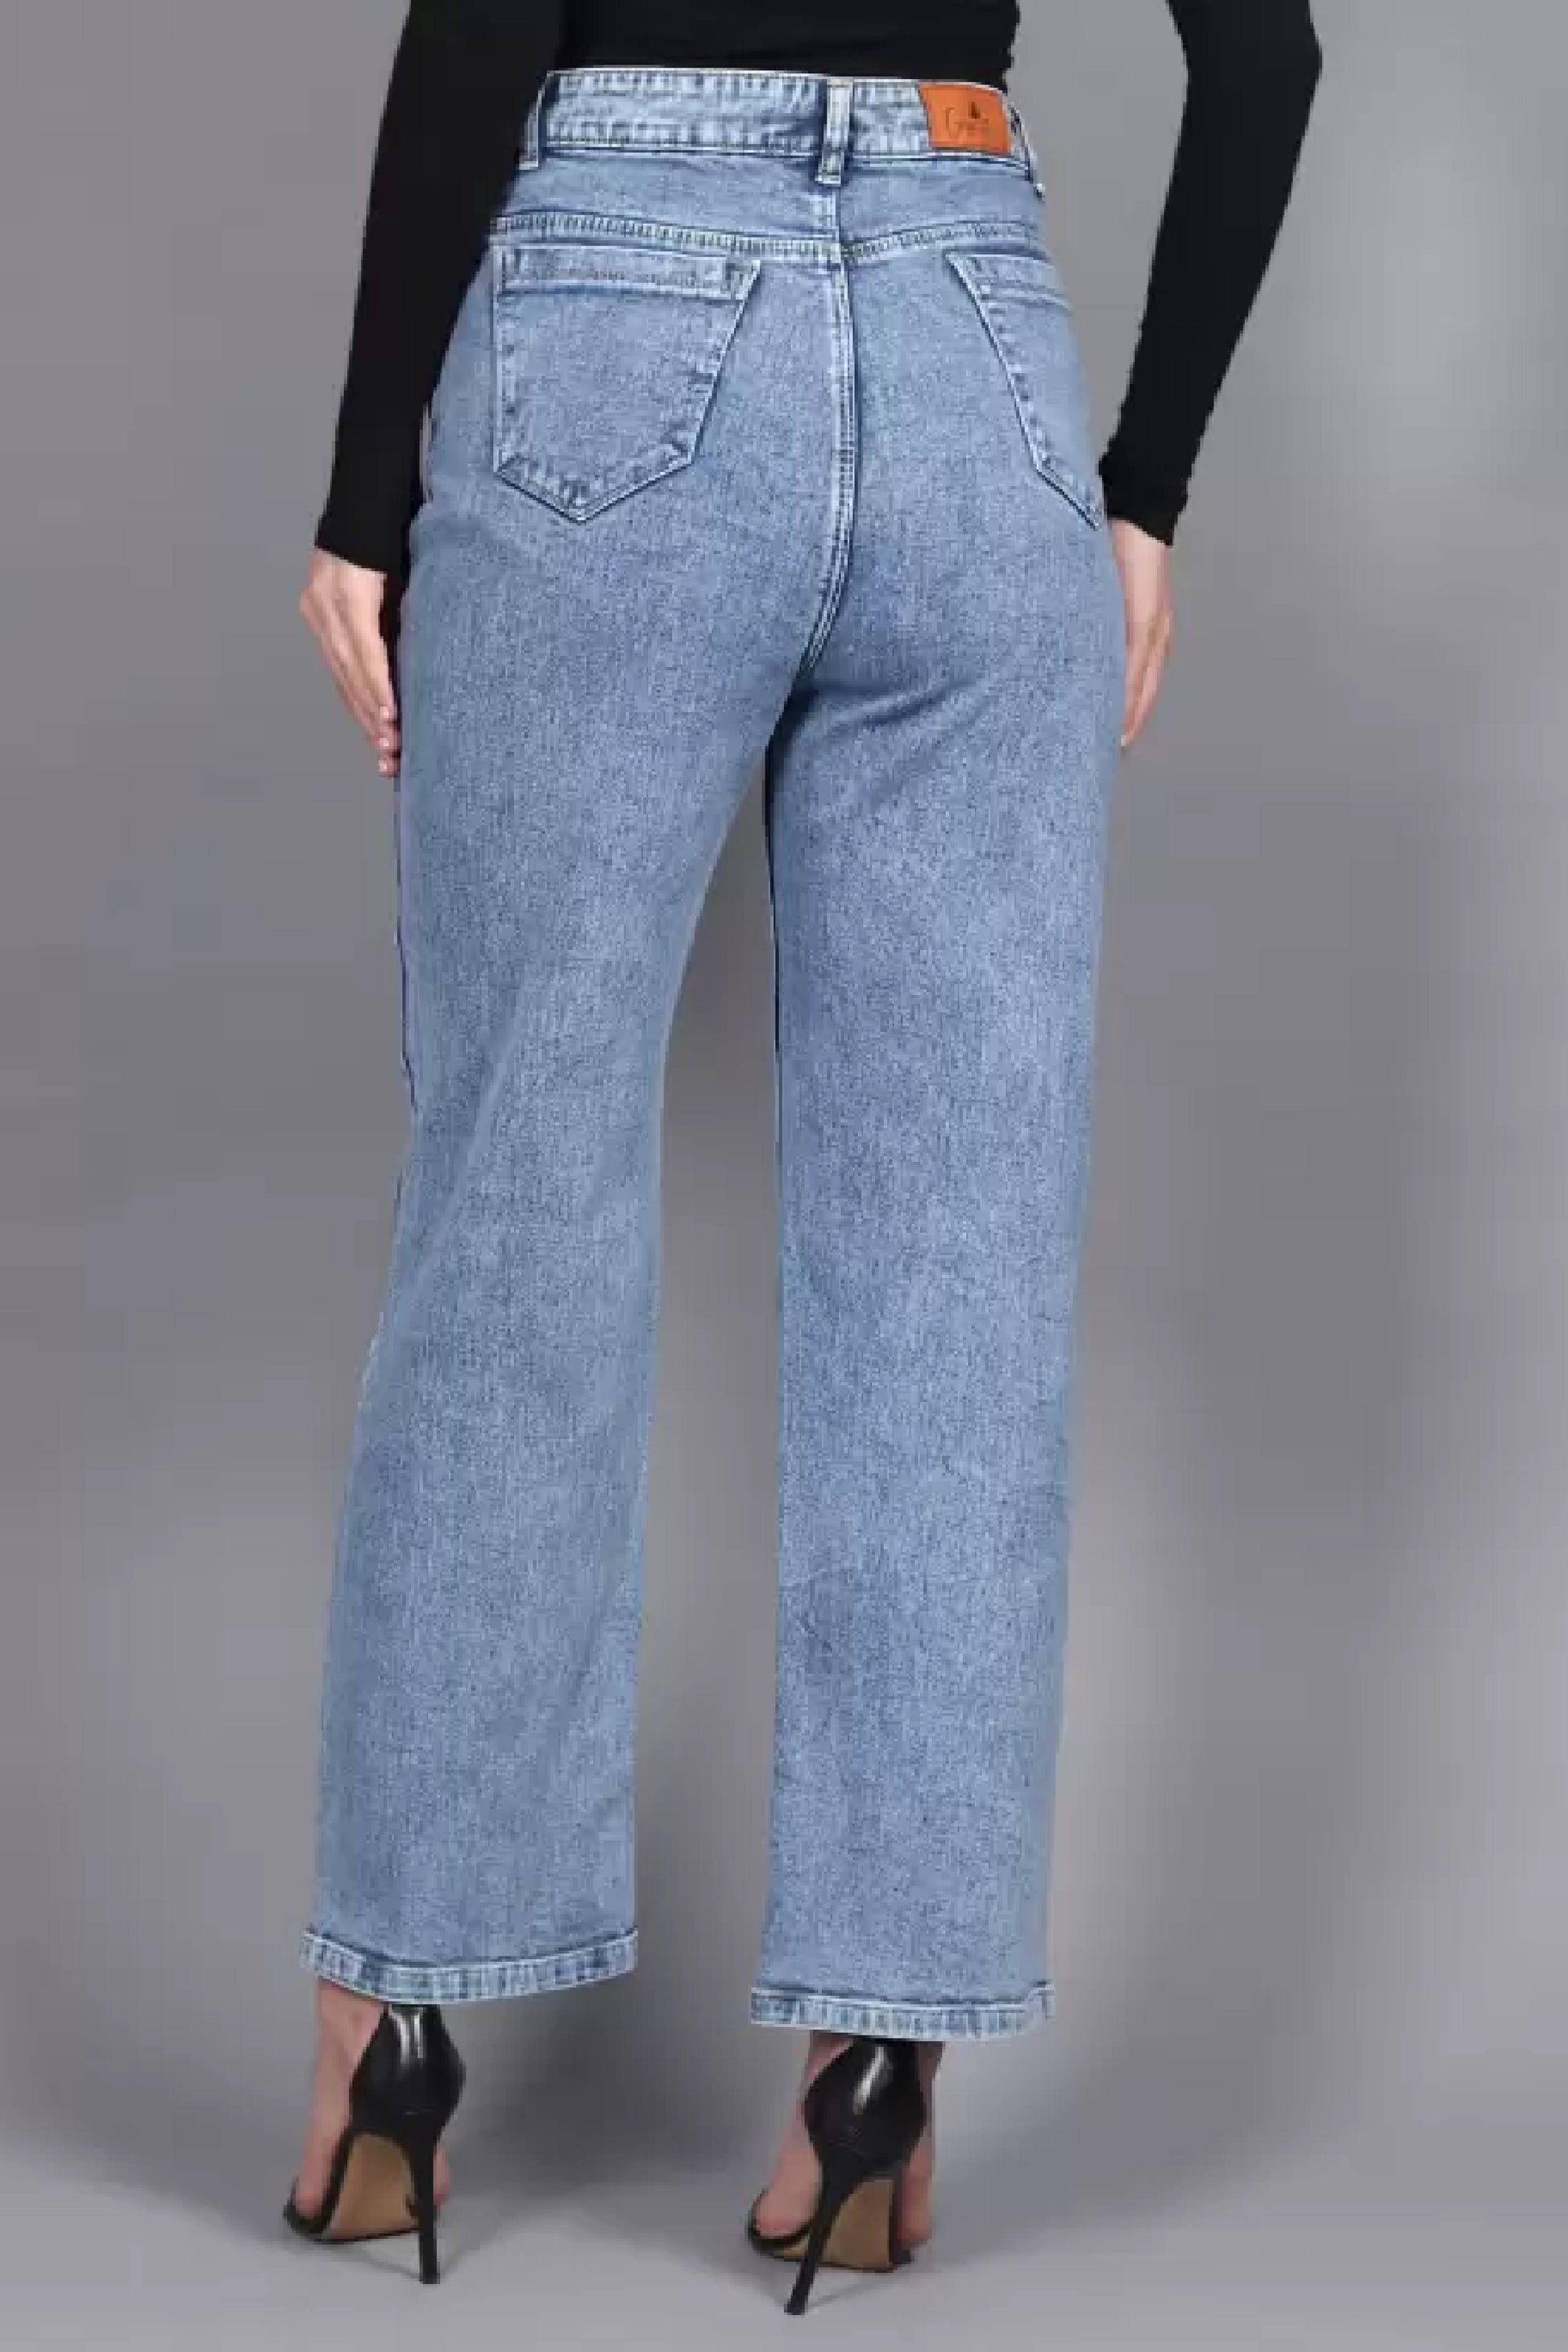 Straight leg light blue high rise denim jeans for women dubai online